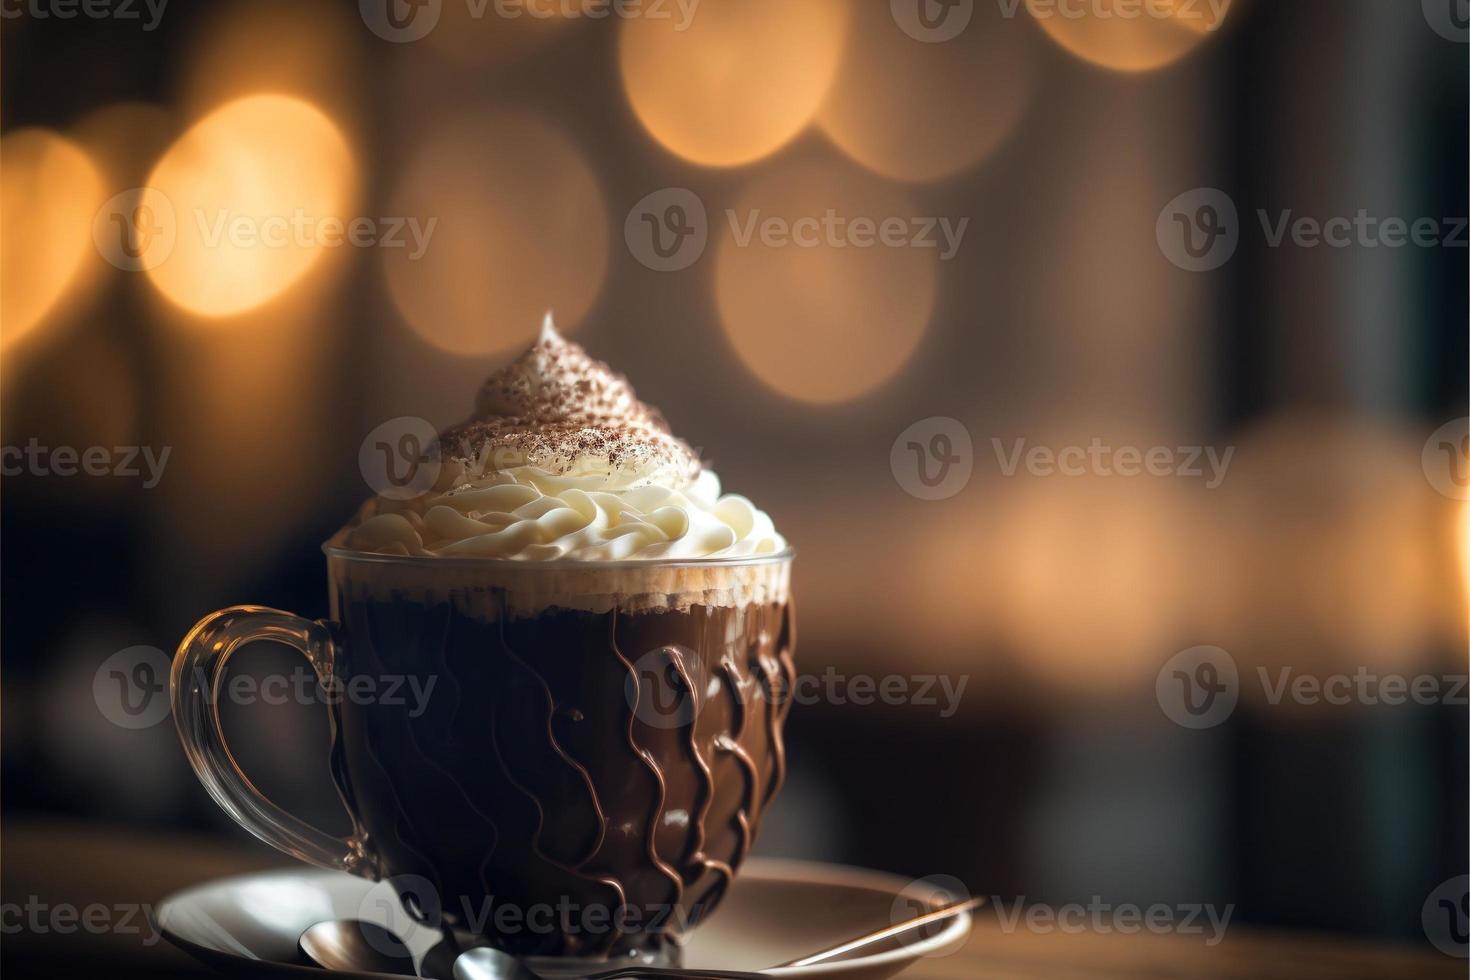 chocolat chaud dans le café au moment de noël avec une belle boisson épicée chaude bokeh doré photo